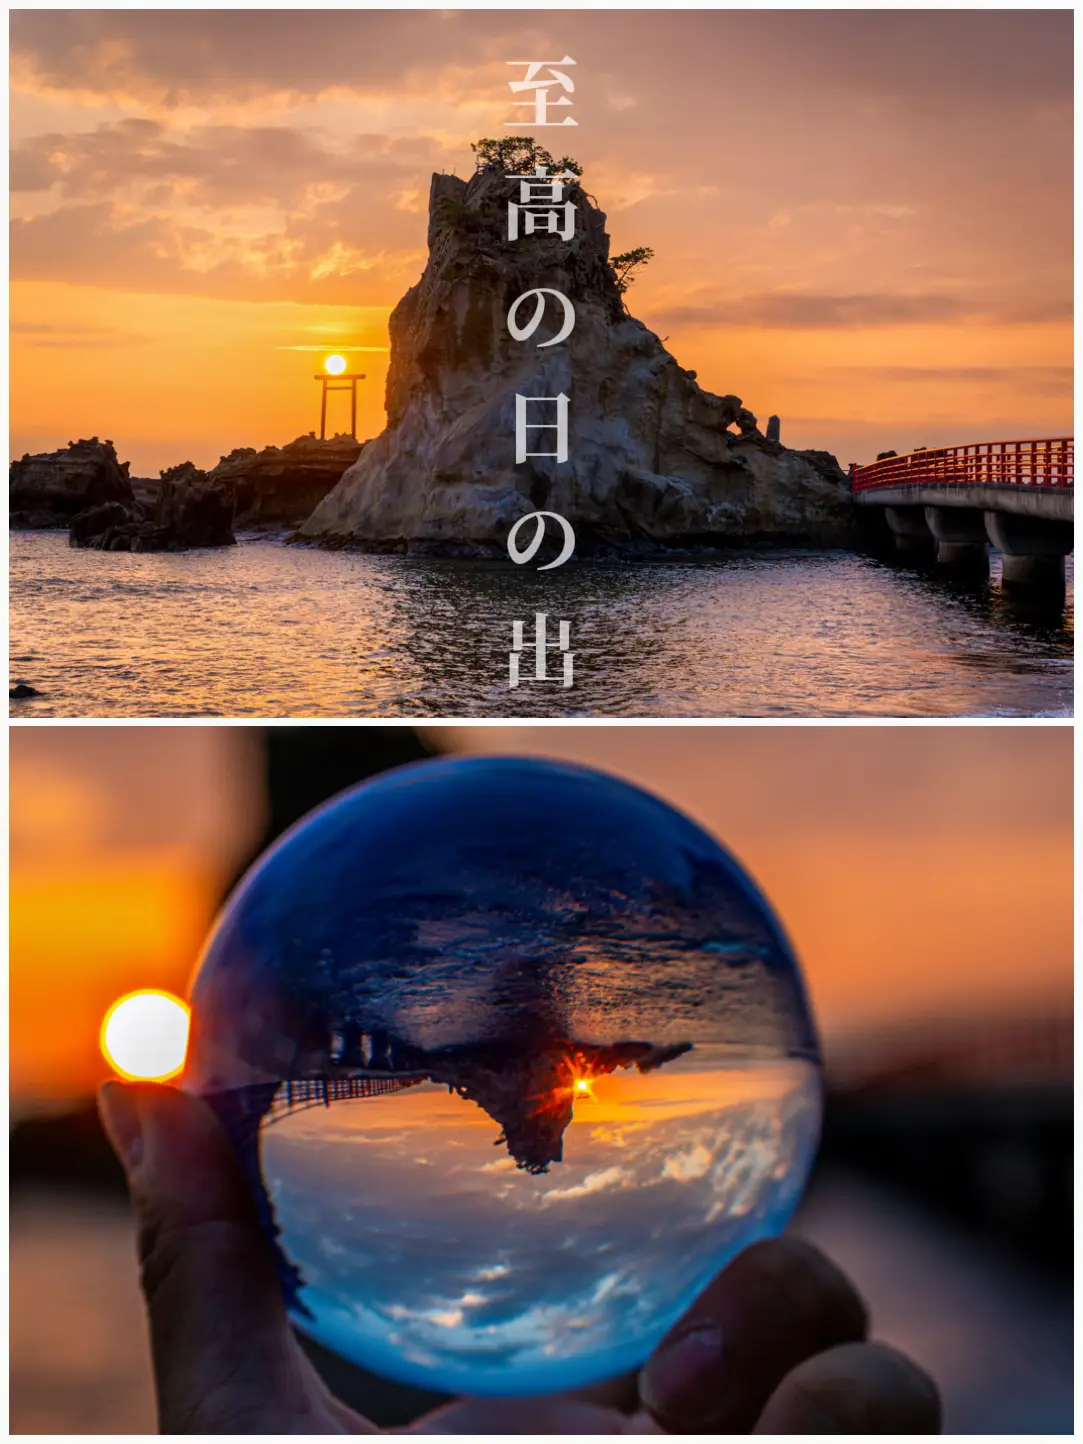 至高の日の出と水晶玉【福島絶景】 | 【水晶玉の人】ブルーが投稿した